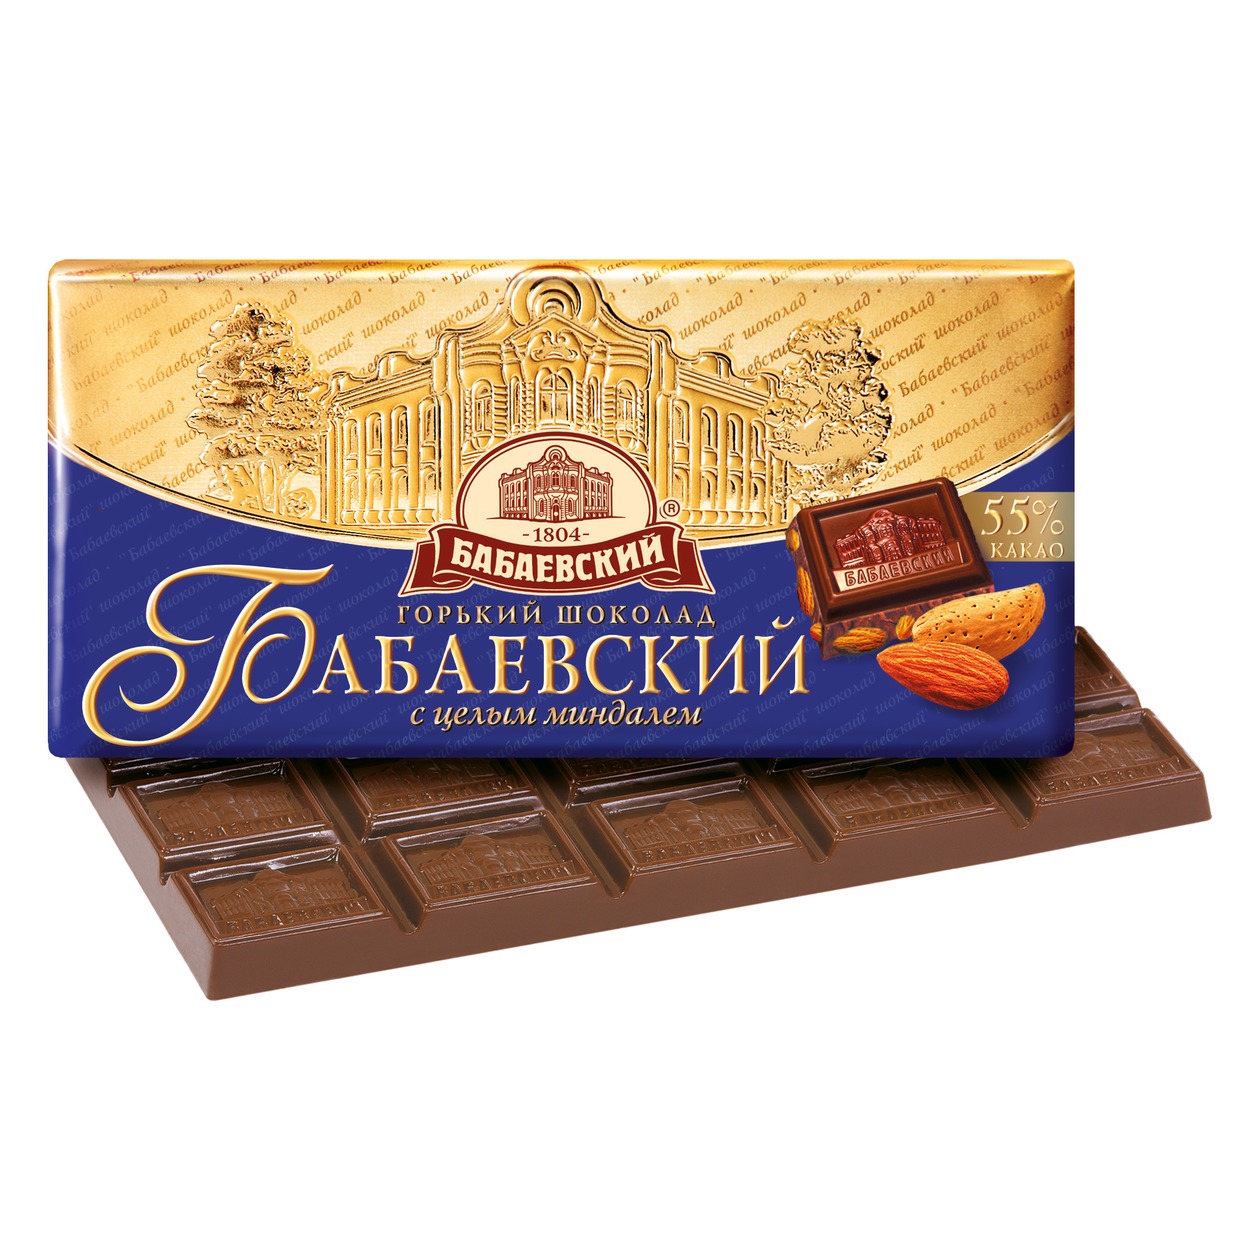 БАБАЕВ.Шоколад с миндалем 100г по акции в Пятерочке